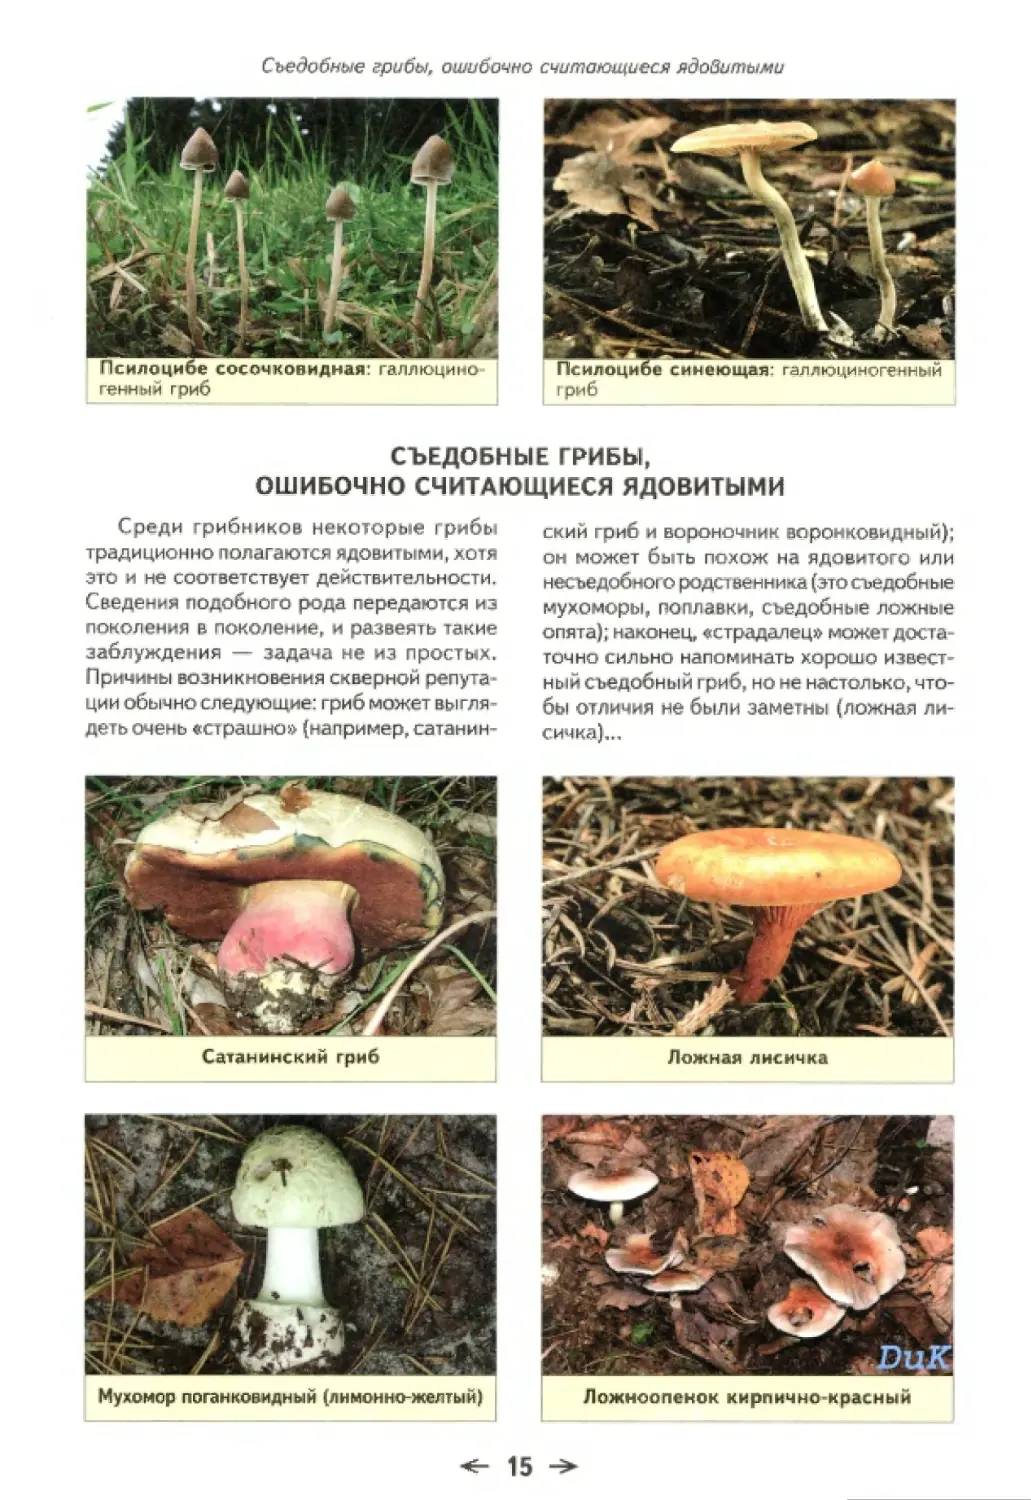 Съедобные грибы, ошибочно считающиеся ядовитыми